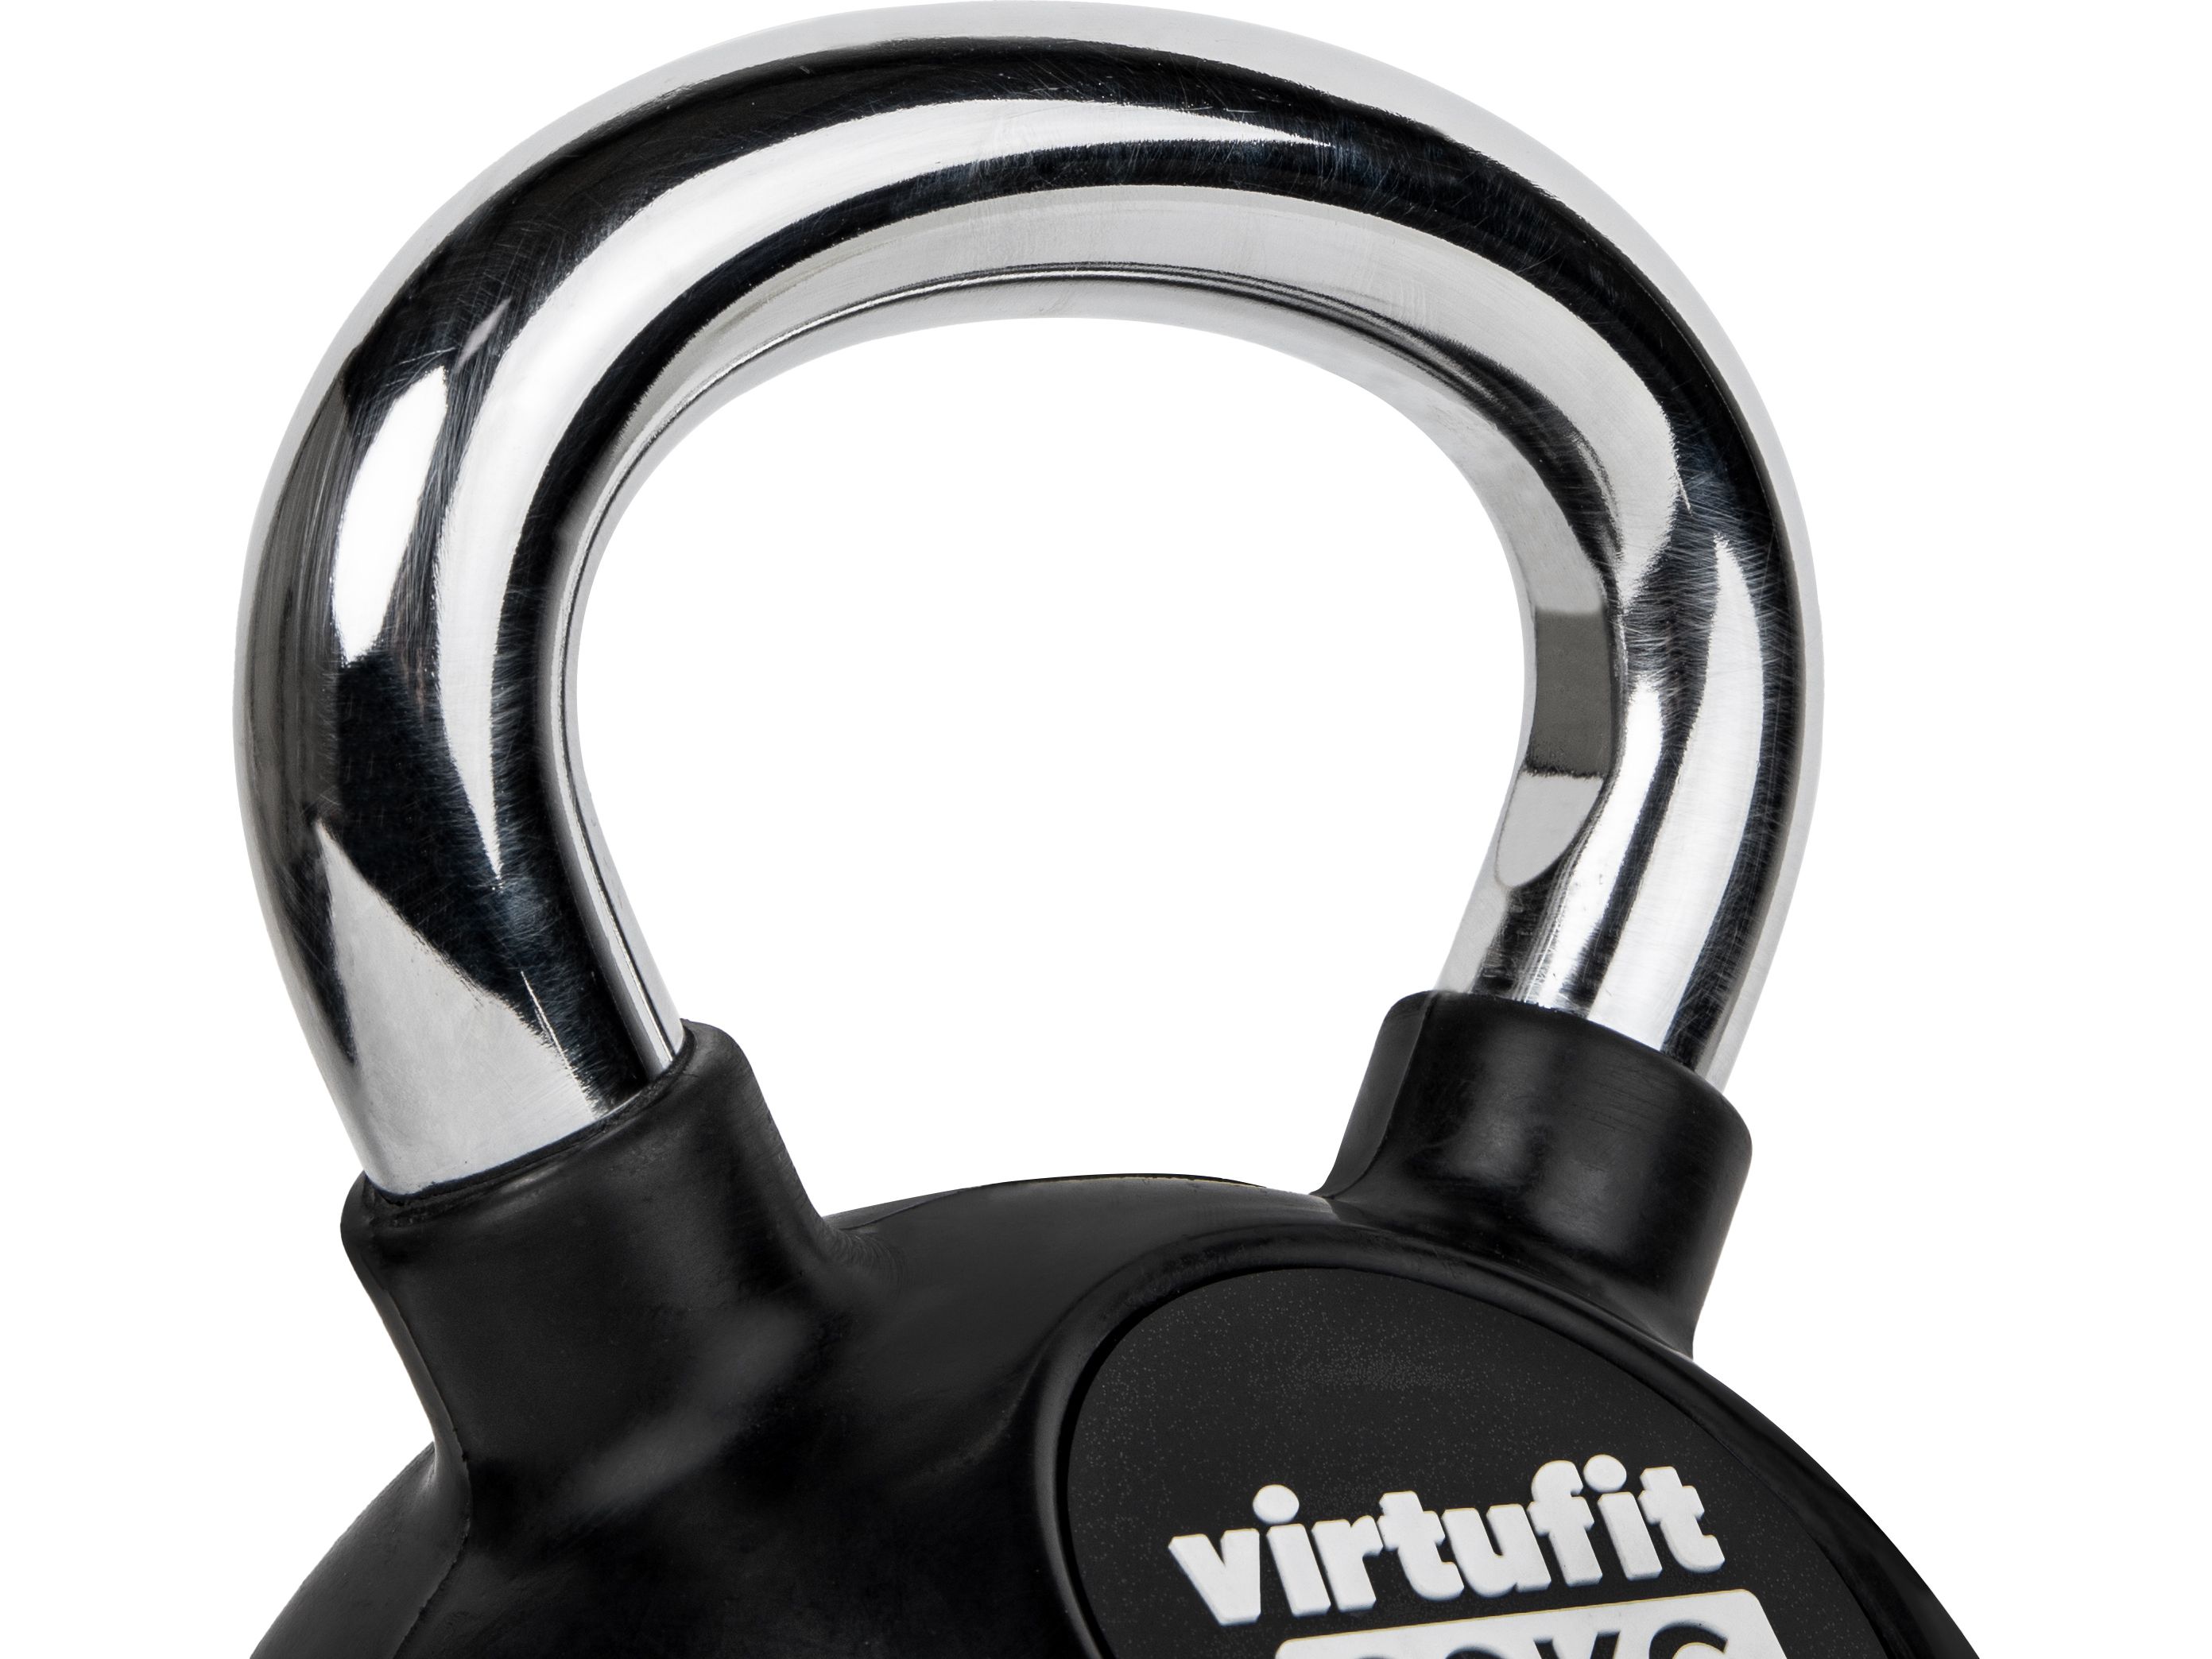 virtufit-kettlebell-rubber-chroom-8-kg